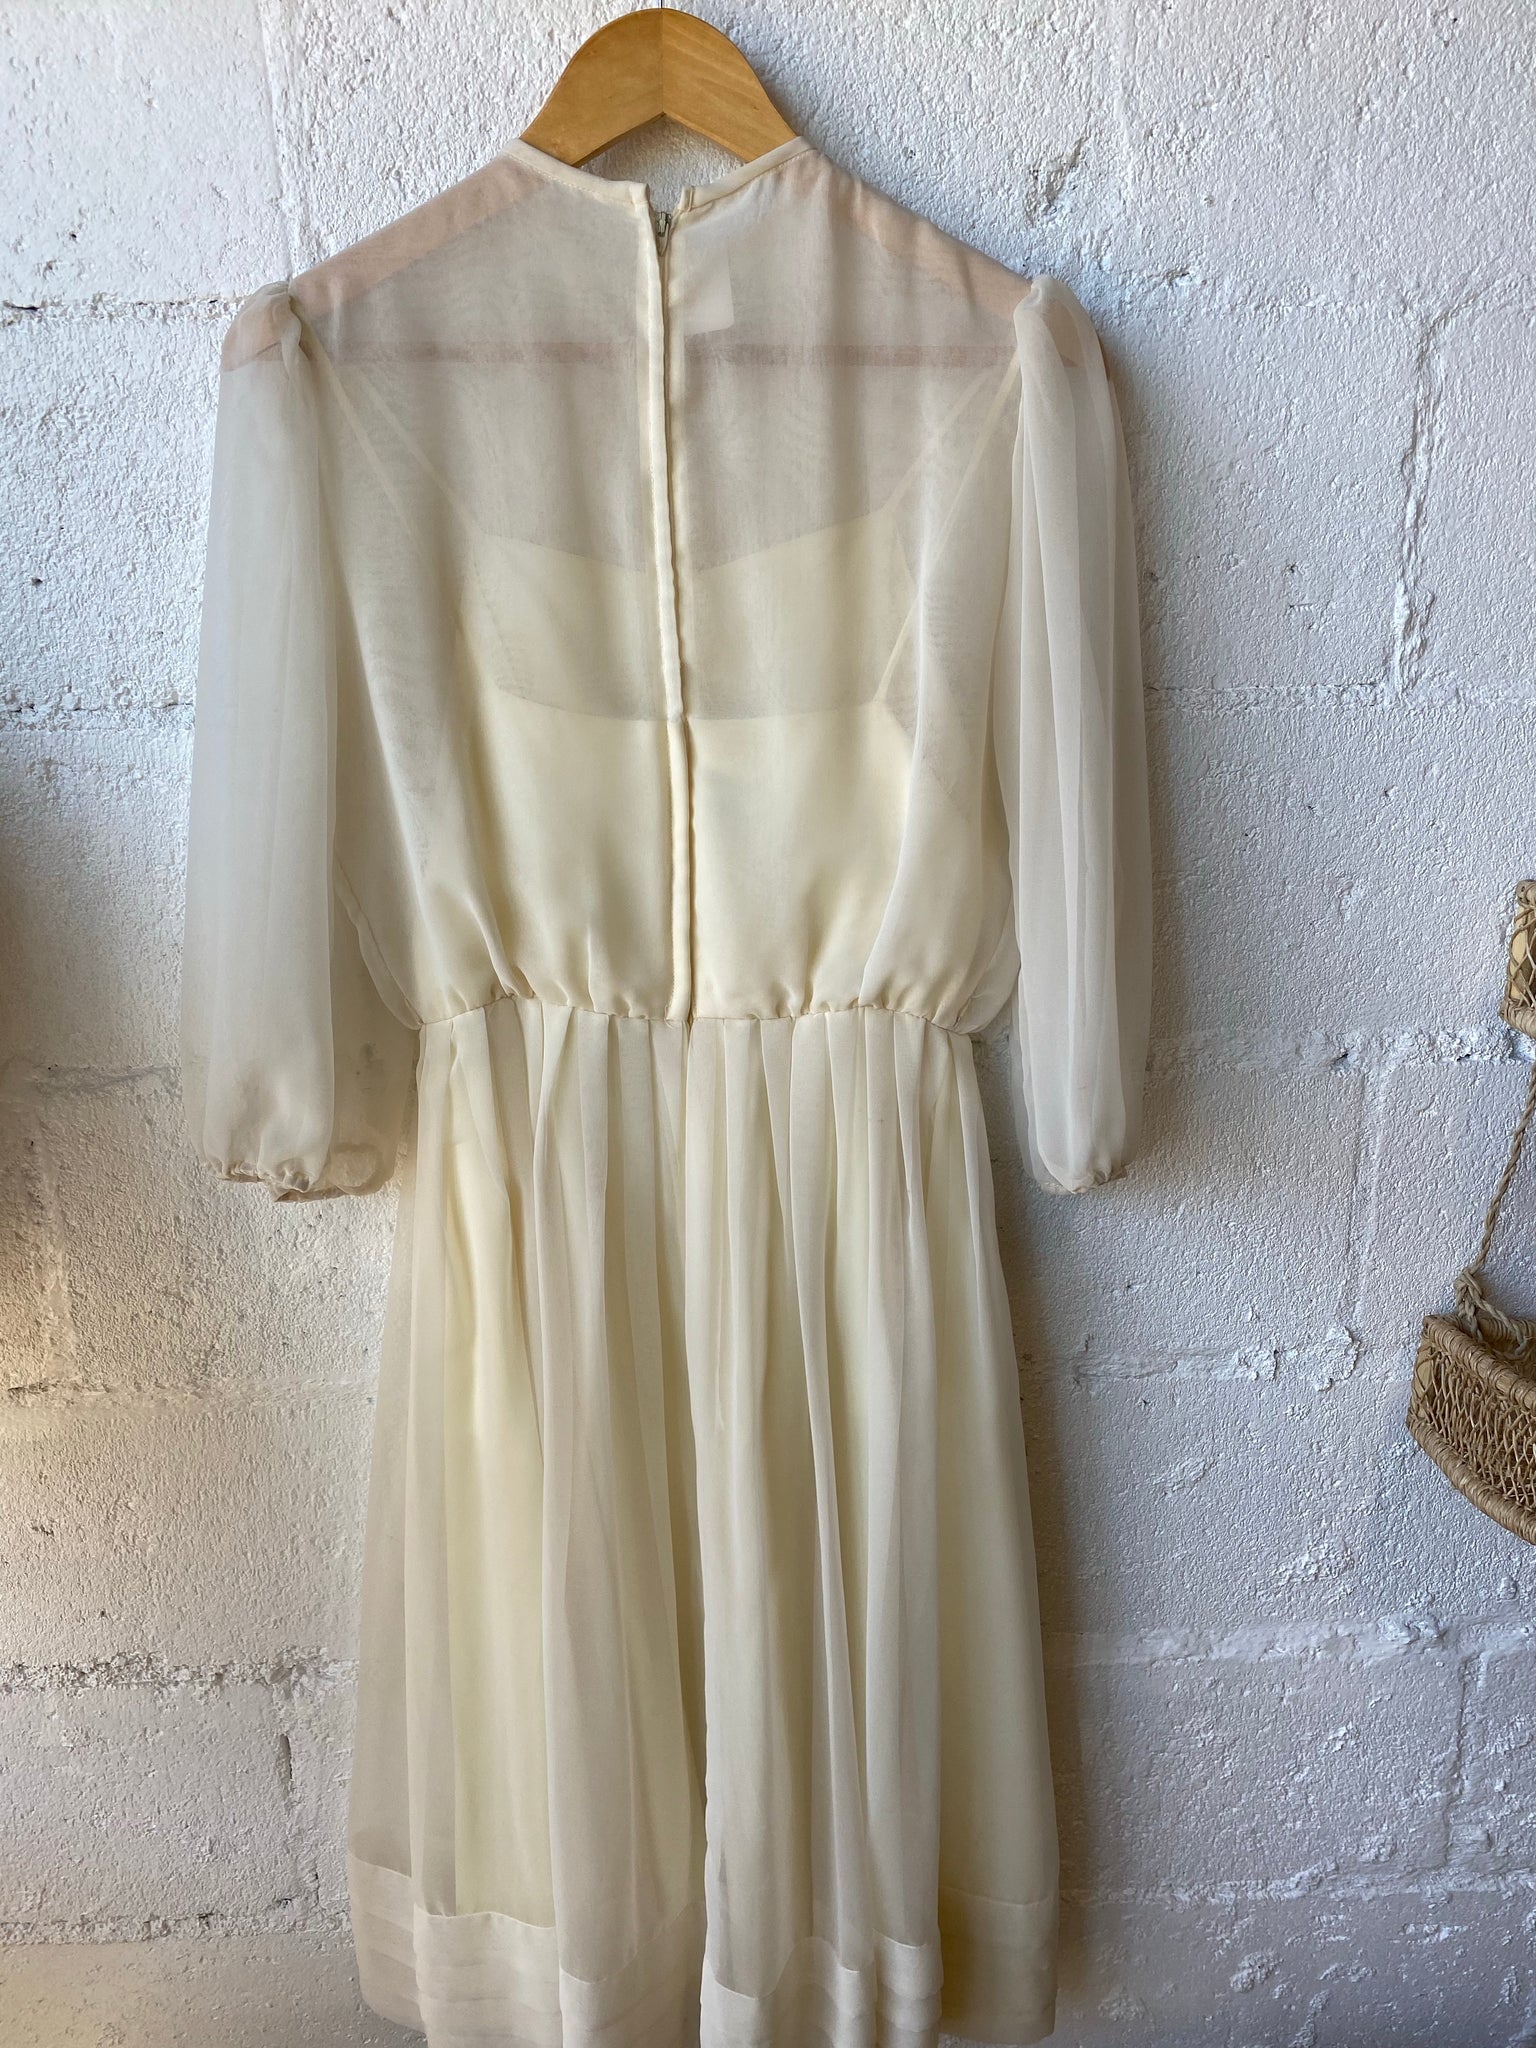 Vintage Sheer Dress